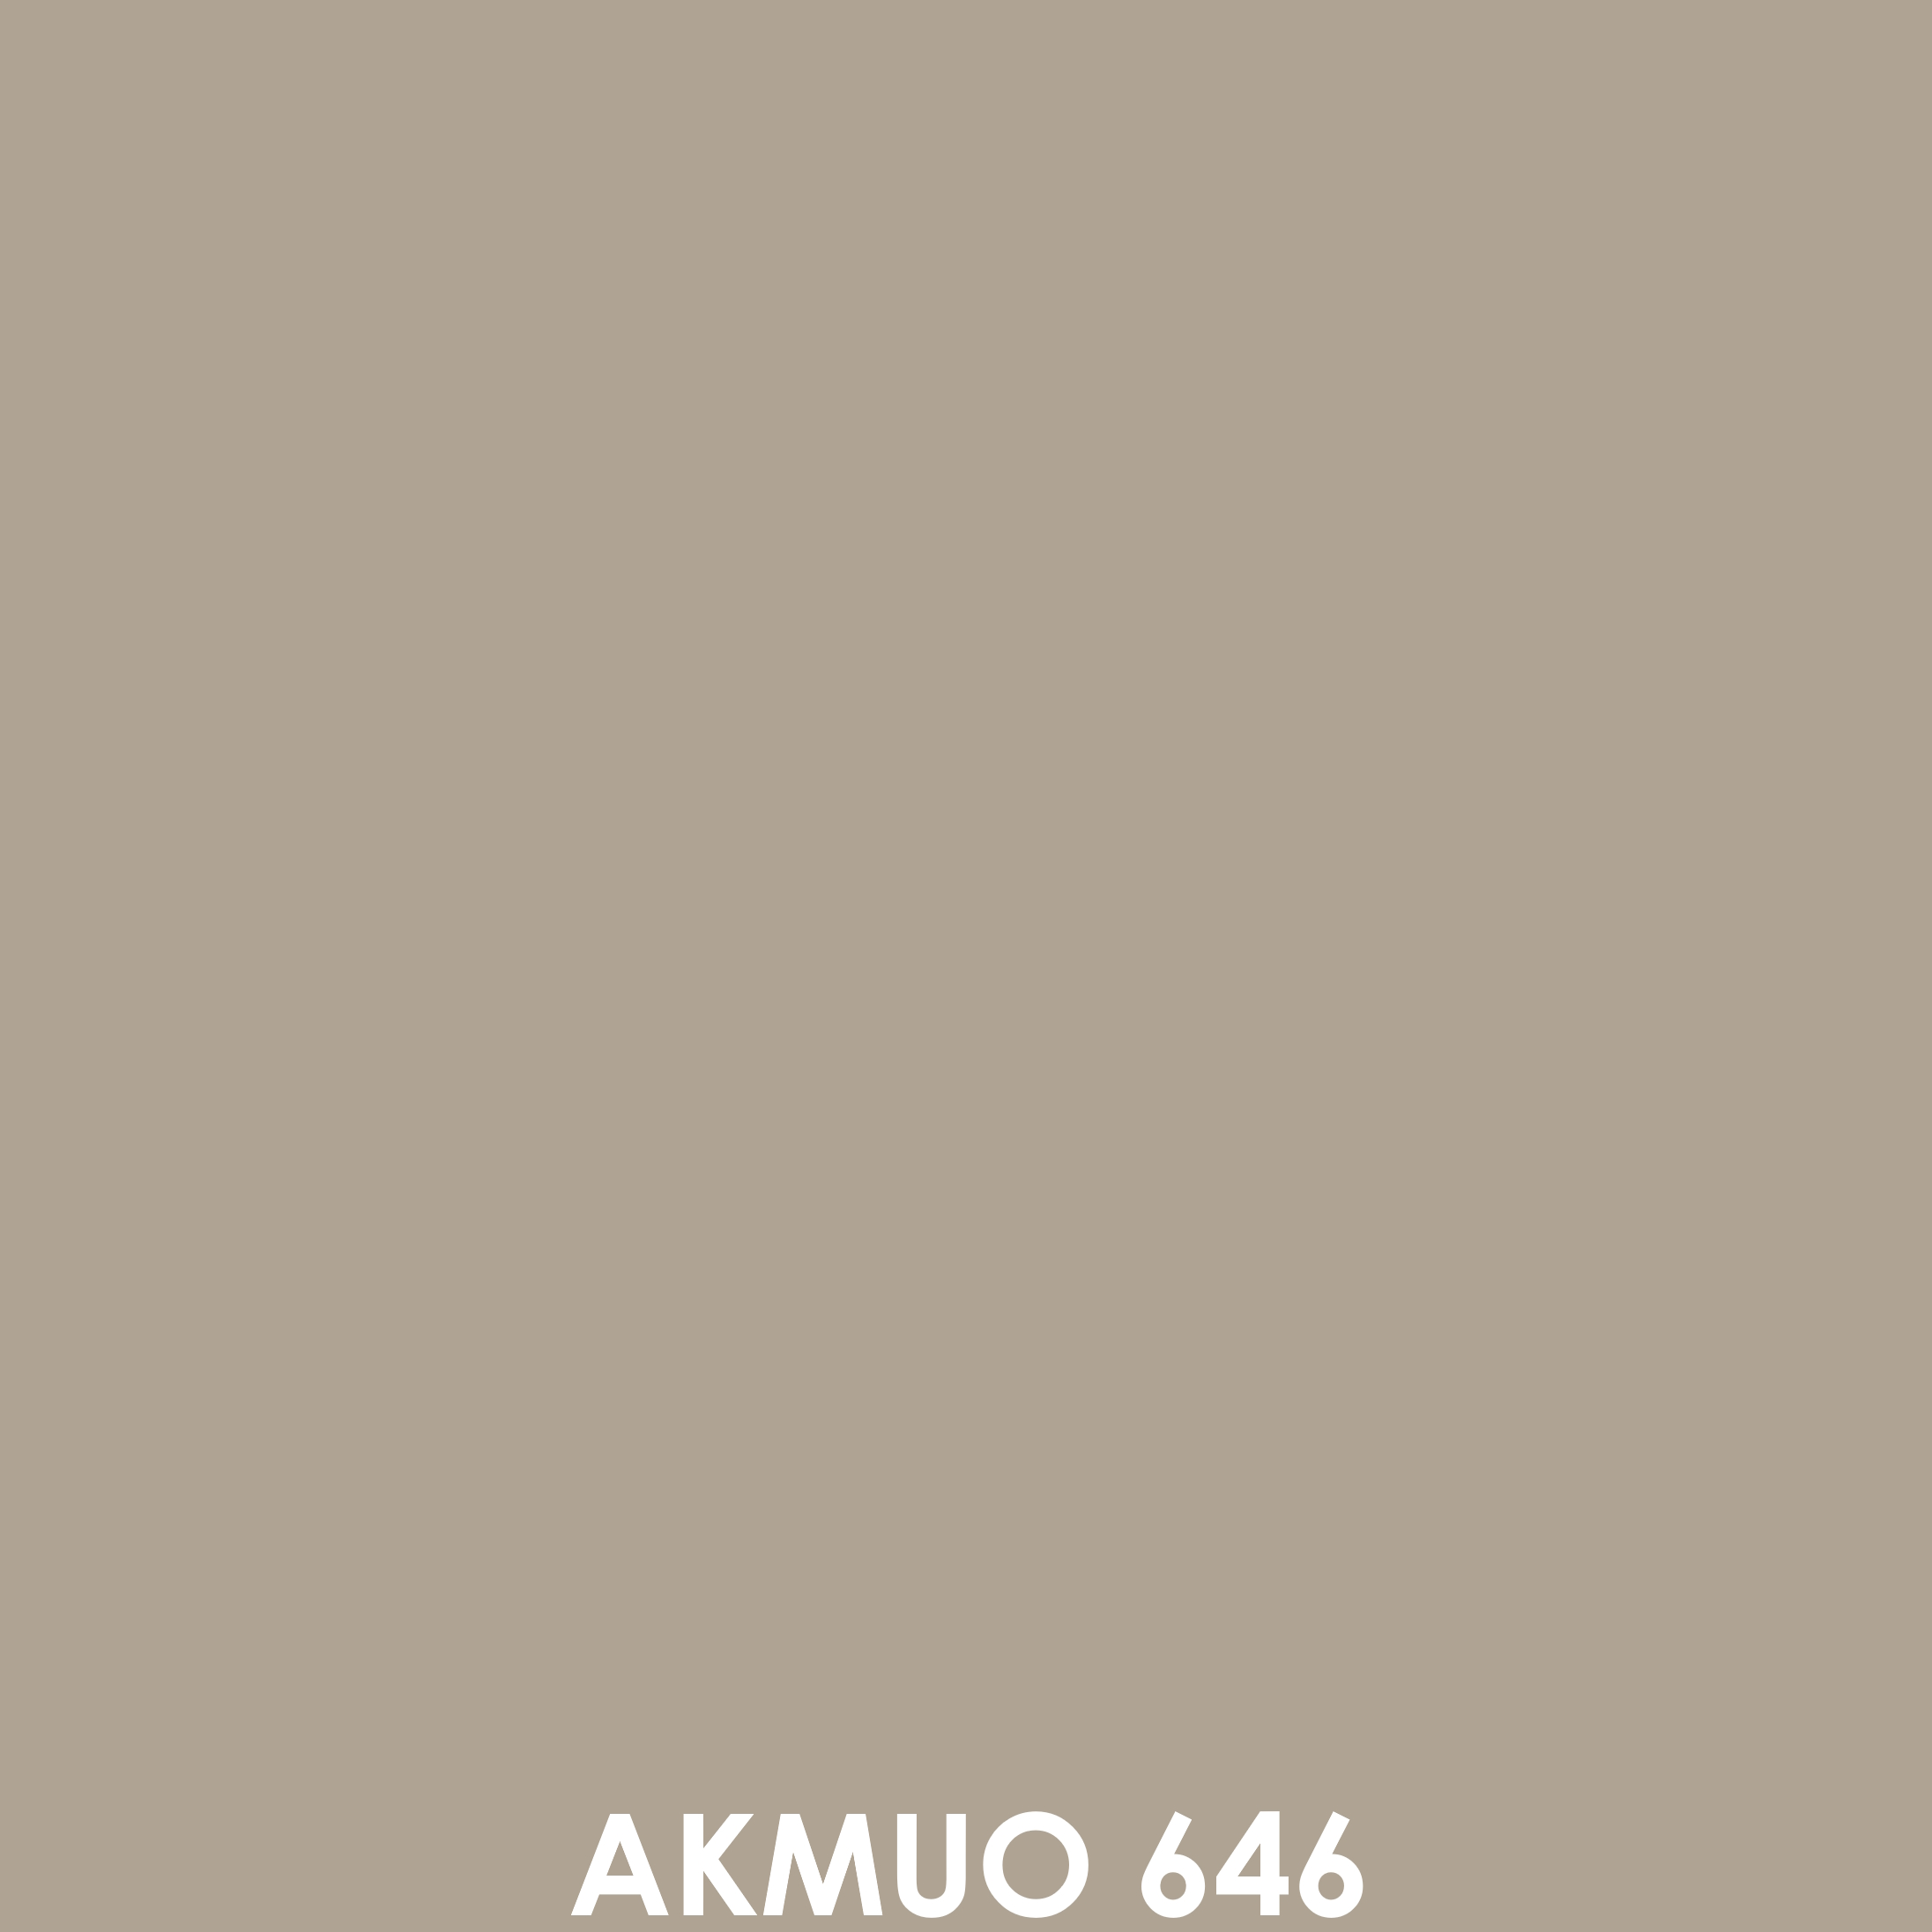 Akmuo 